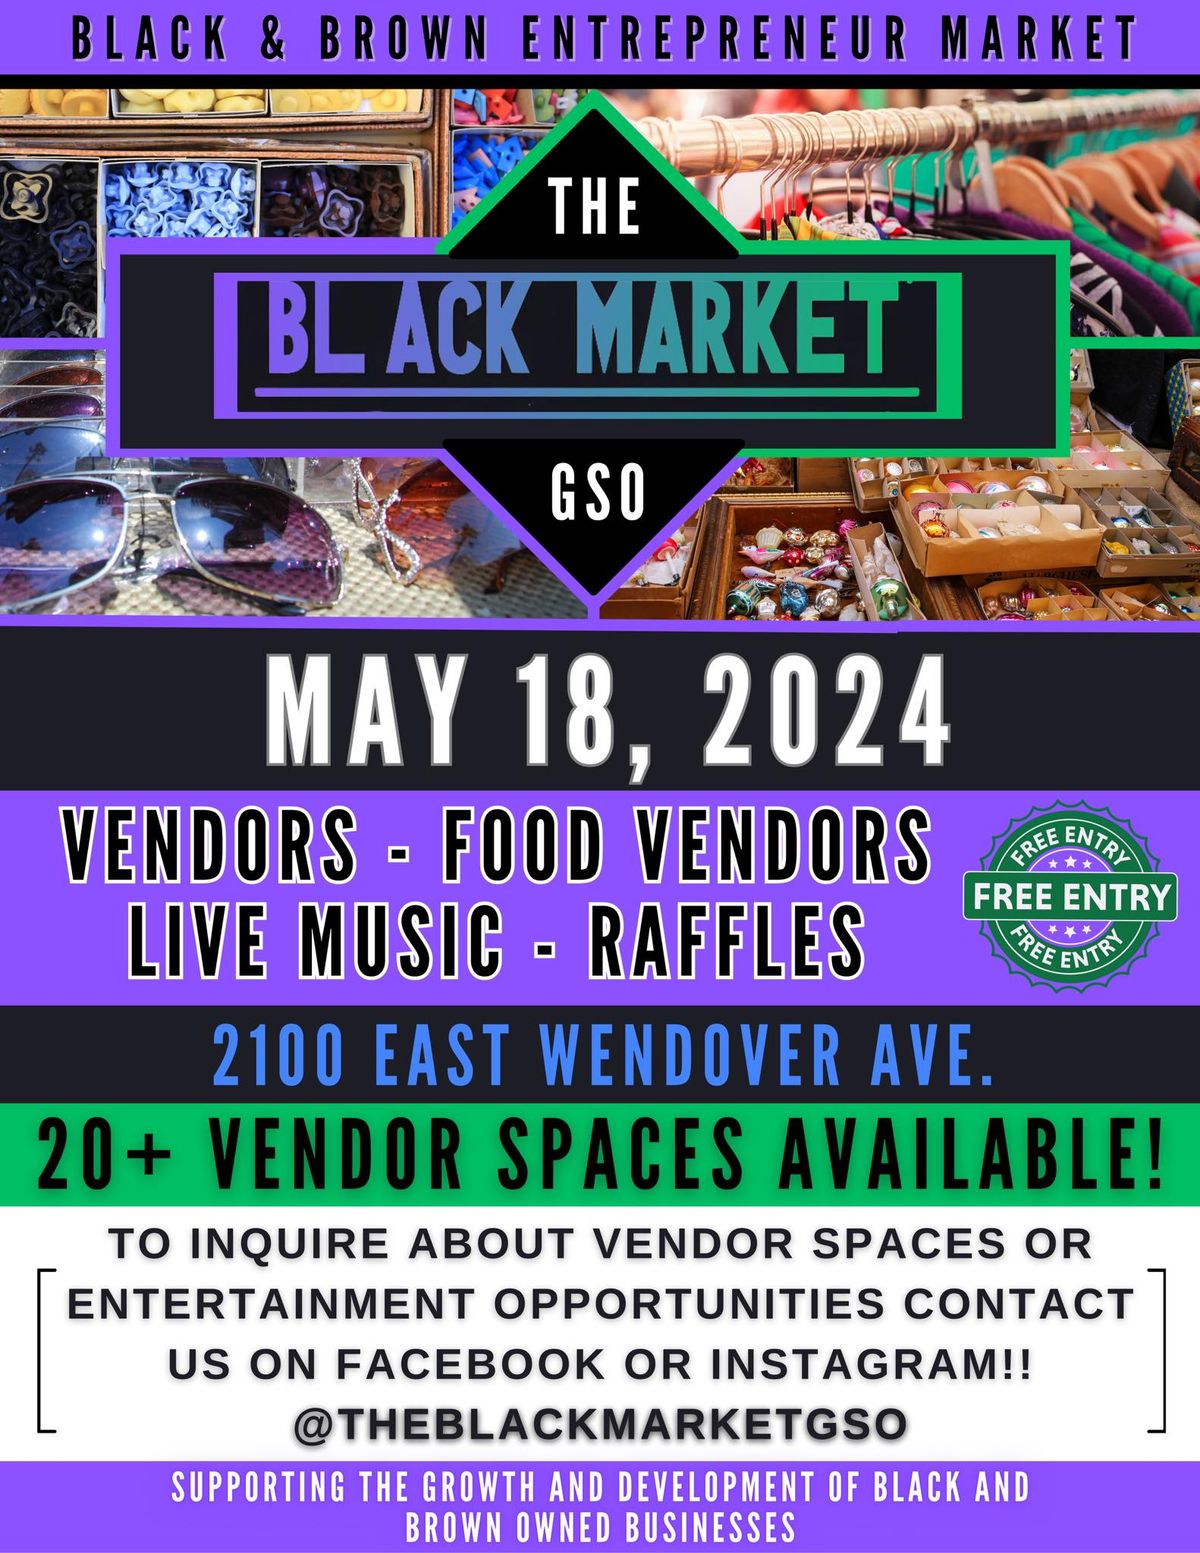 The Black Market GSO